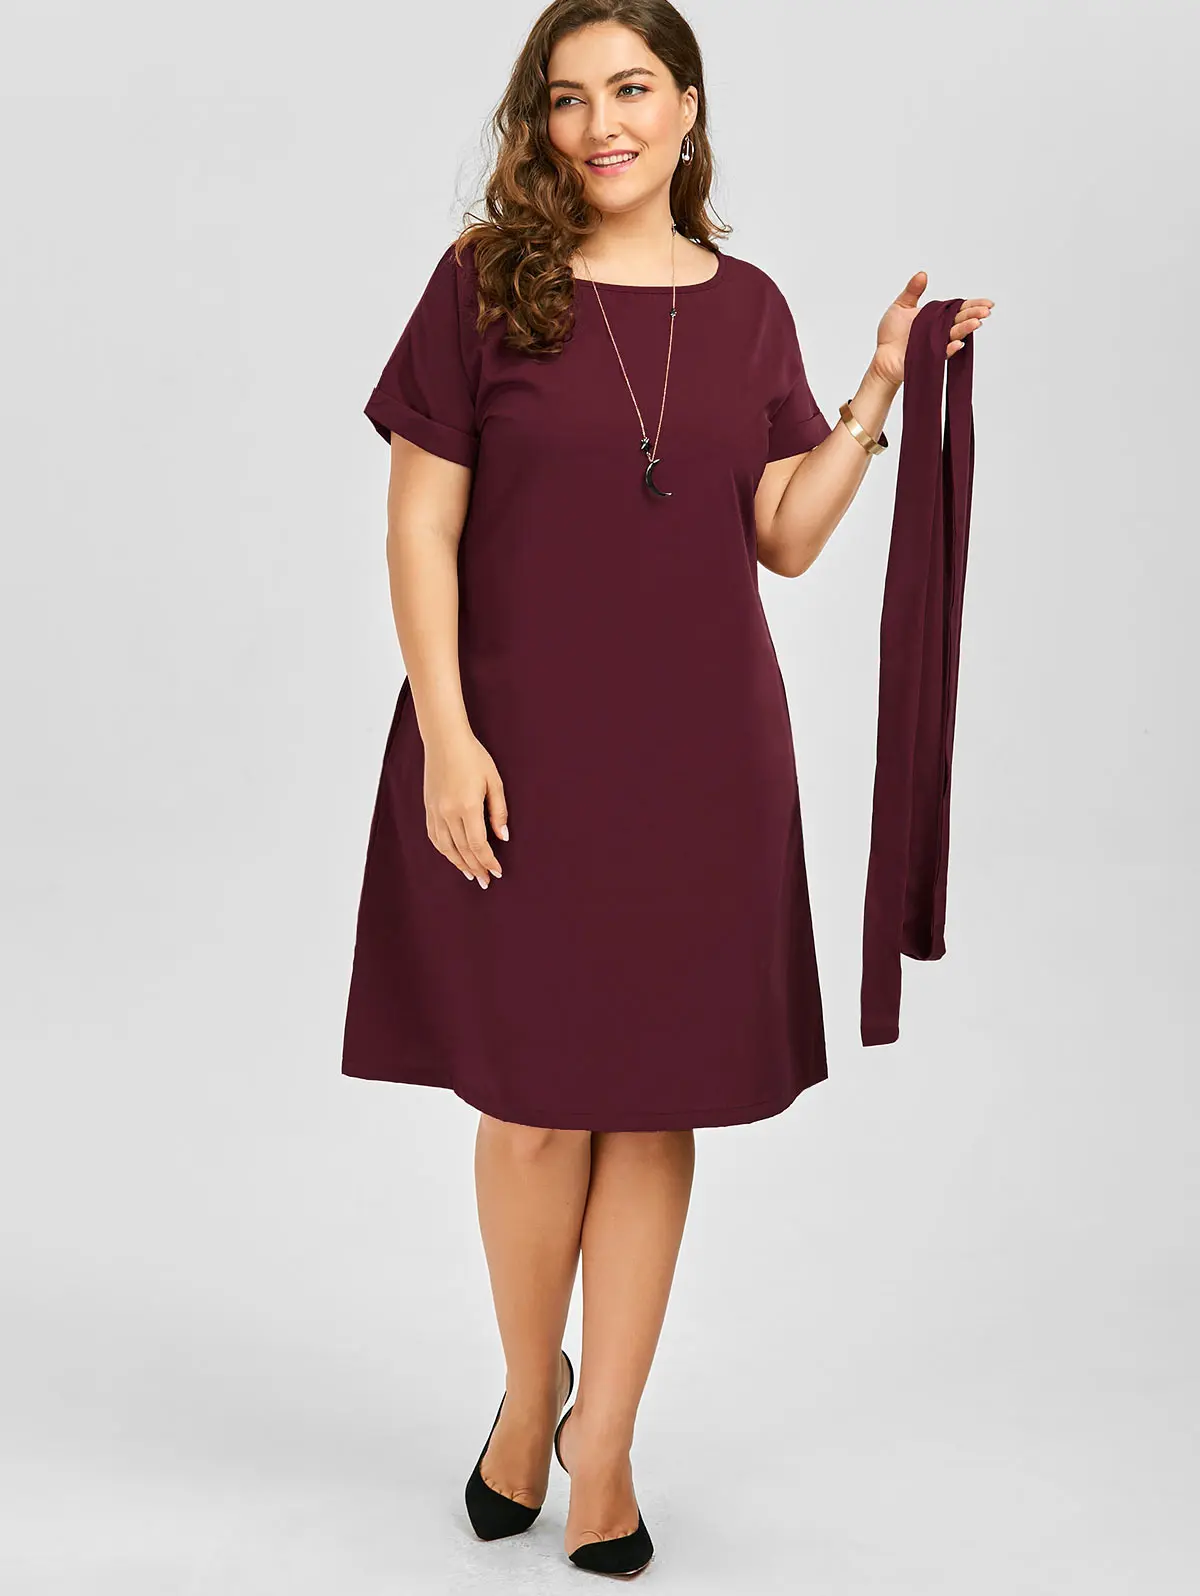 Женское винтажное платье до колена Wipalo с поясом и карманами одежда для работы